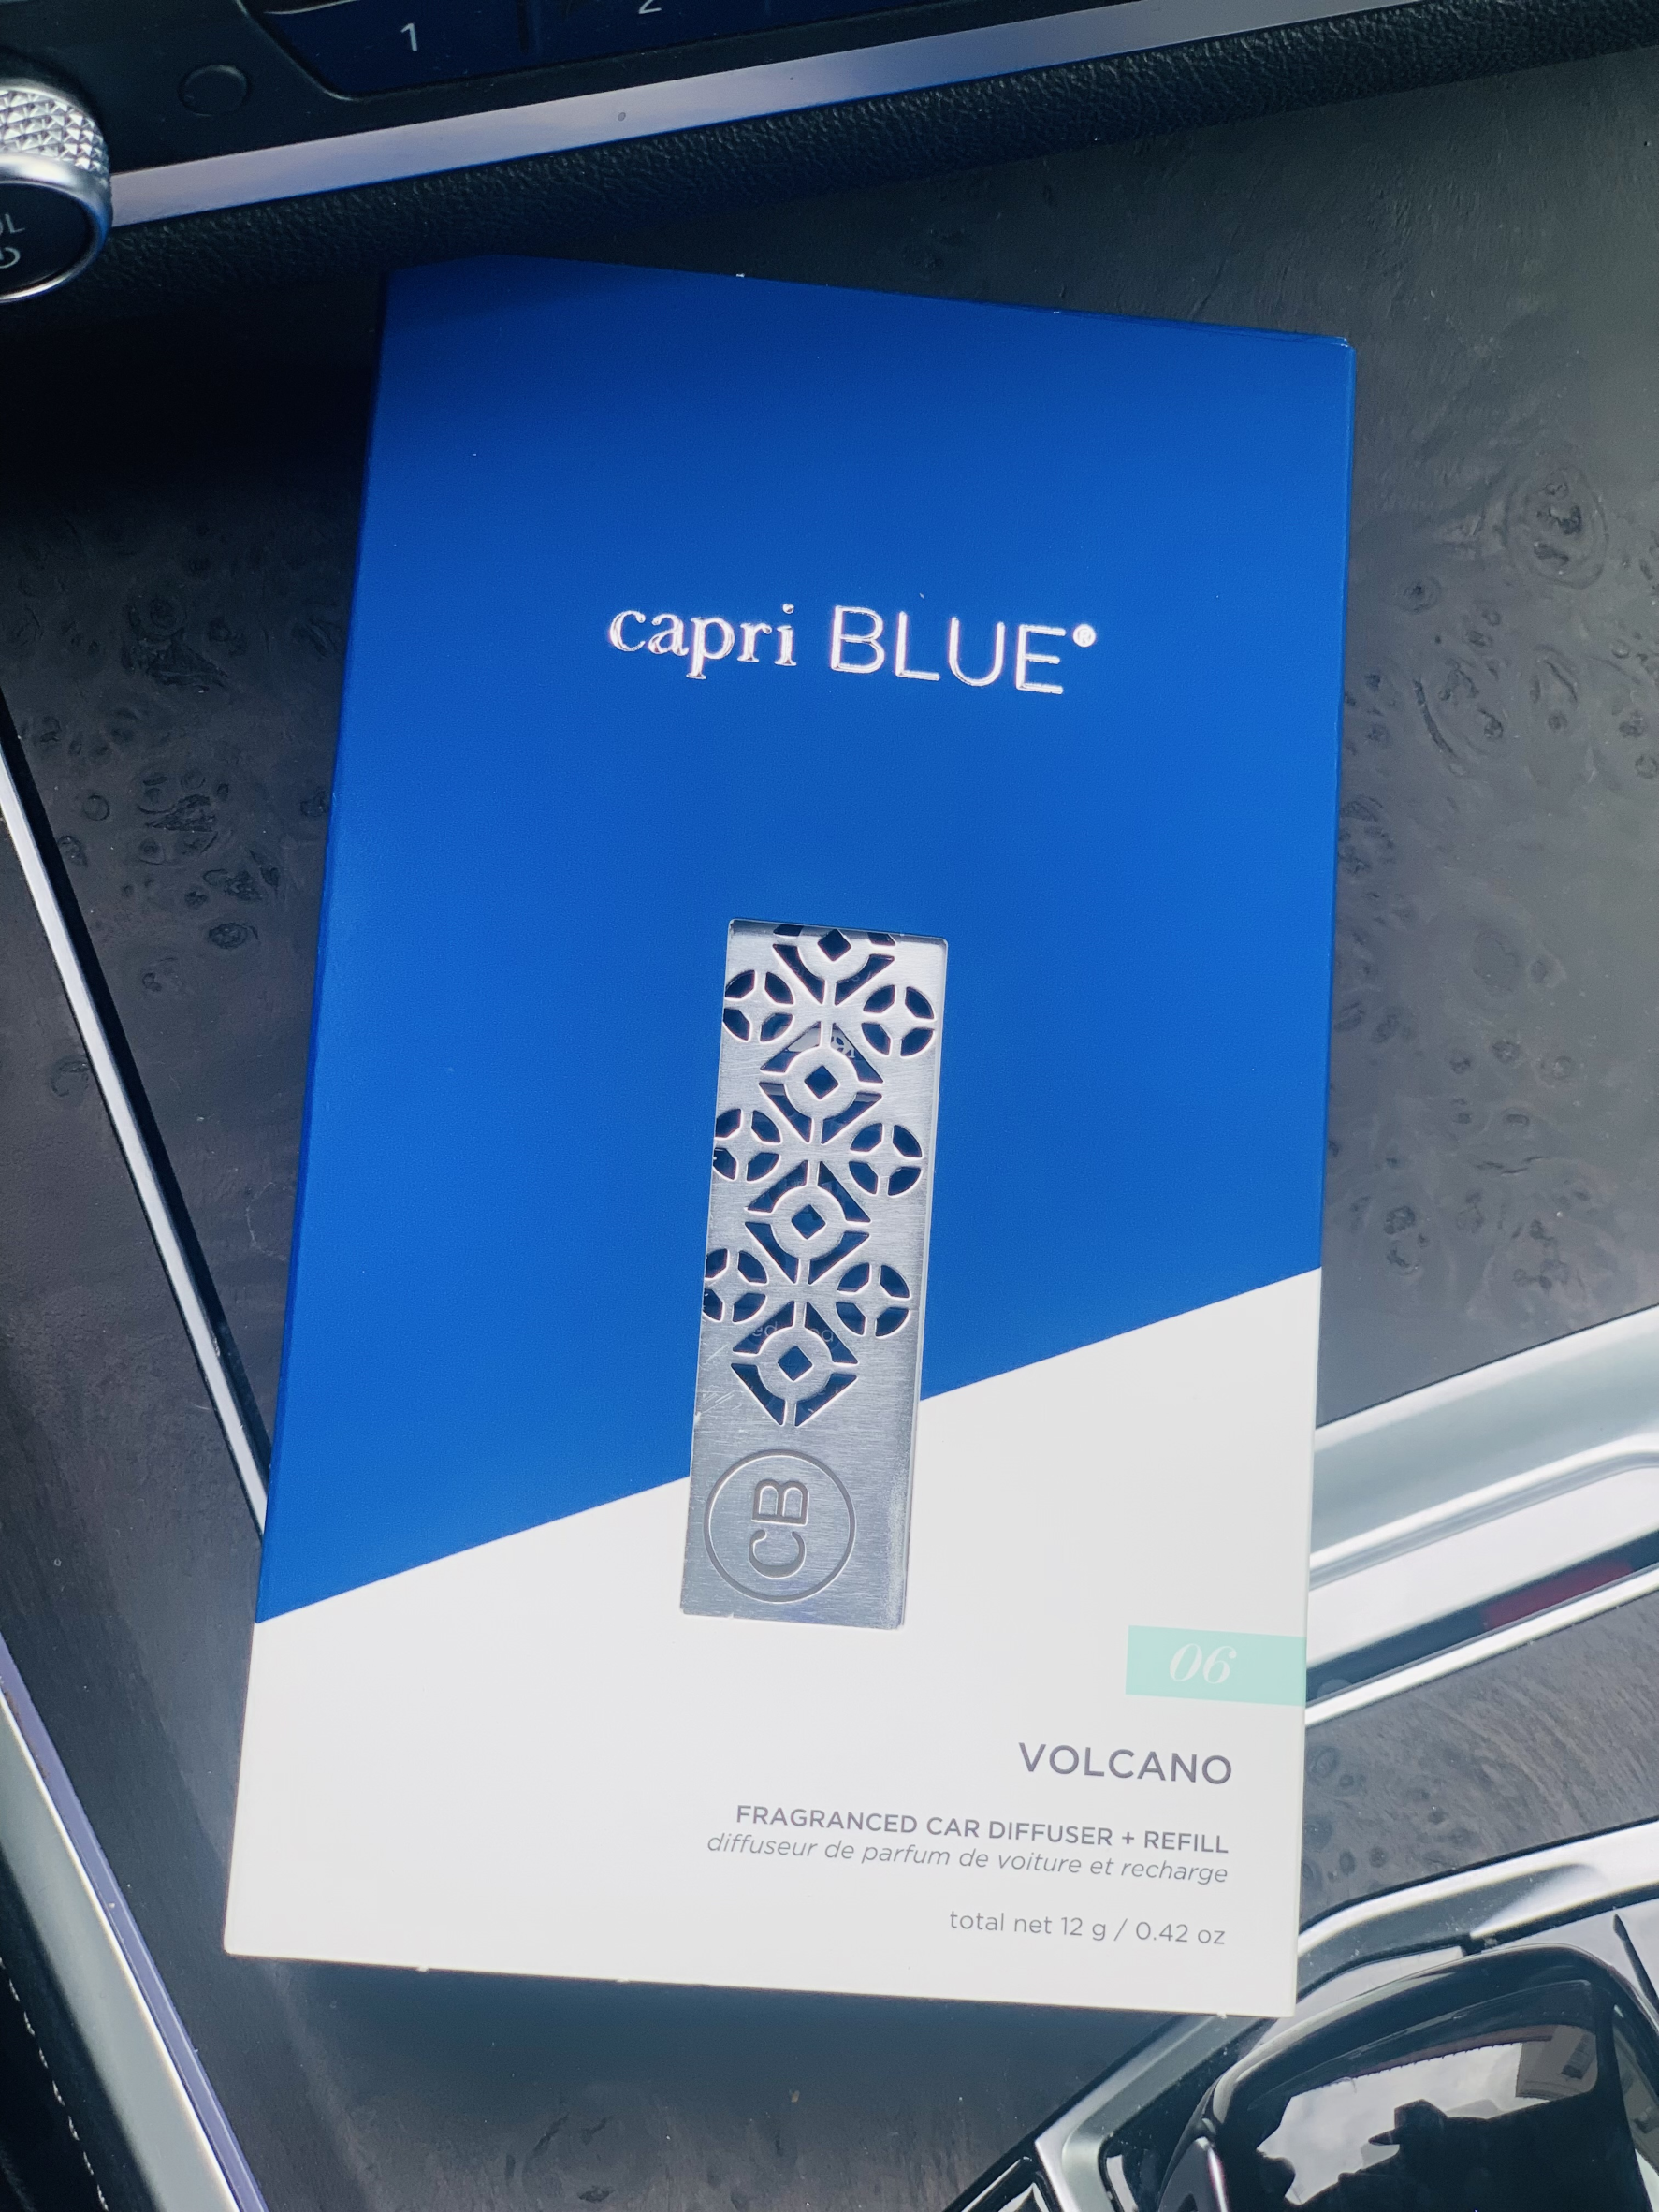 Capri Blue Fragranced Car Diffuser Refill In Volcano Scent